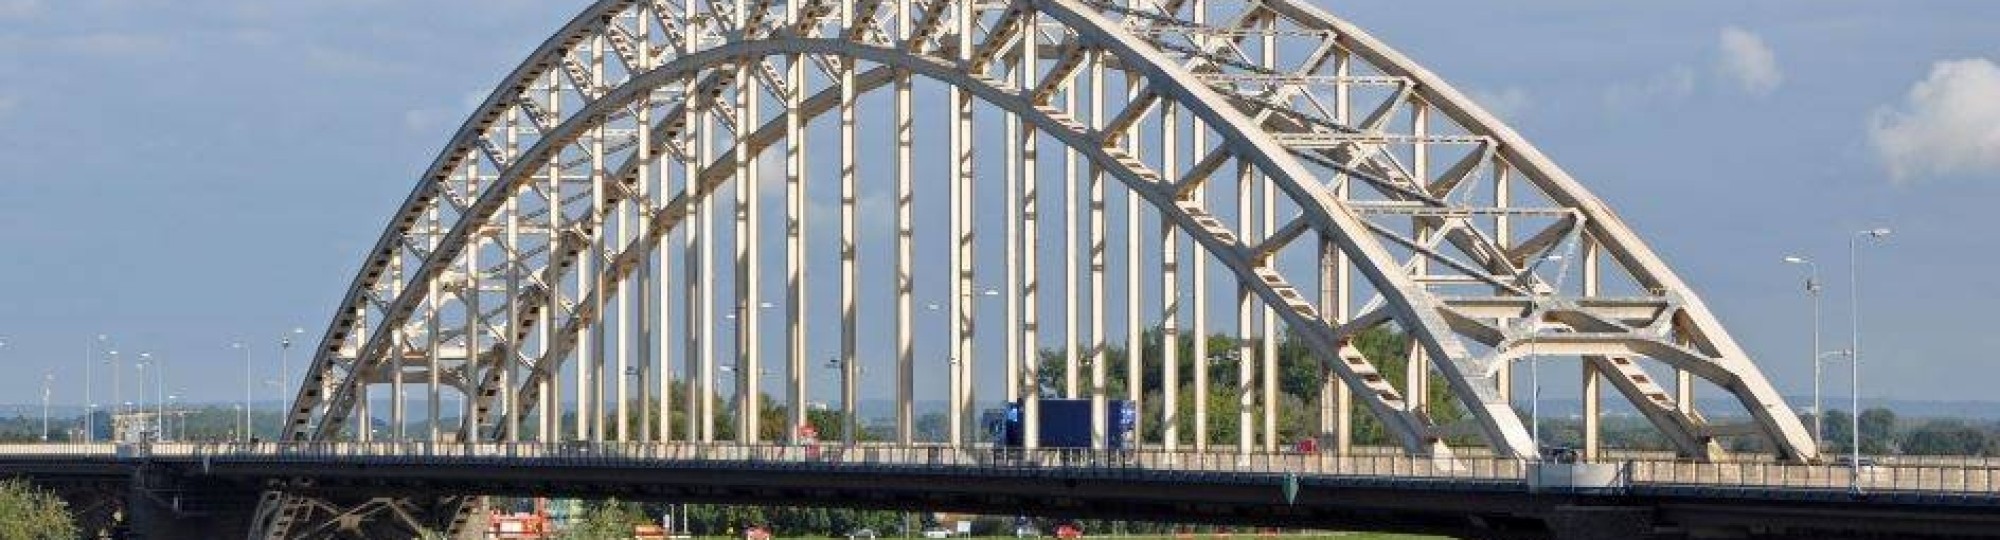 Verpleegkundig Congres Over de bogen van de Waalbrug Nijmegen